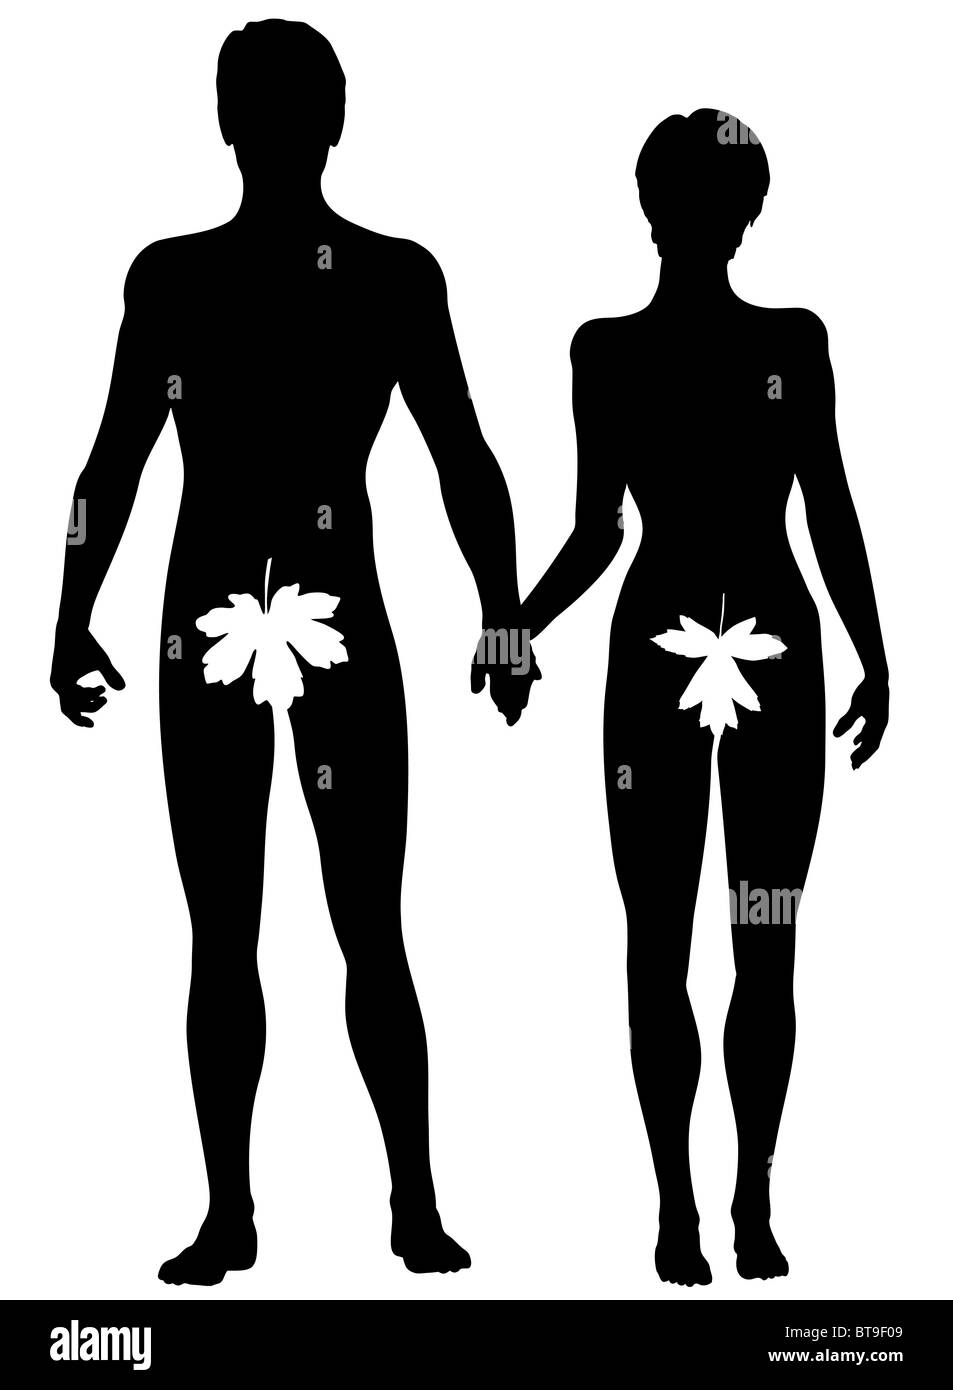 L'Illustre silhouette d'Adam et Eve Banque D'Images